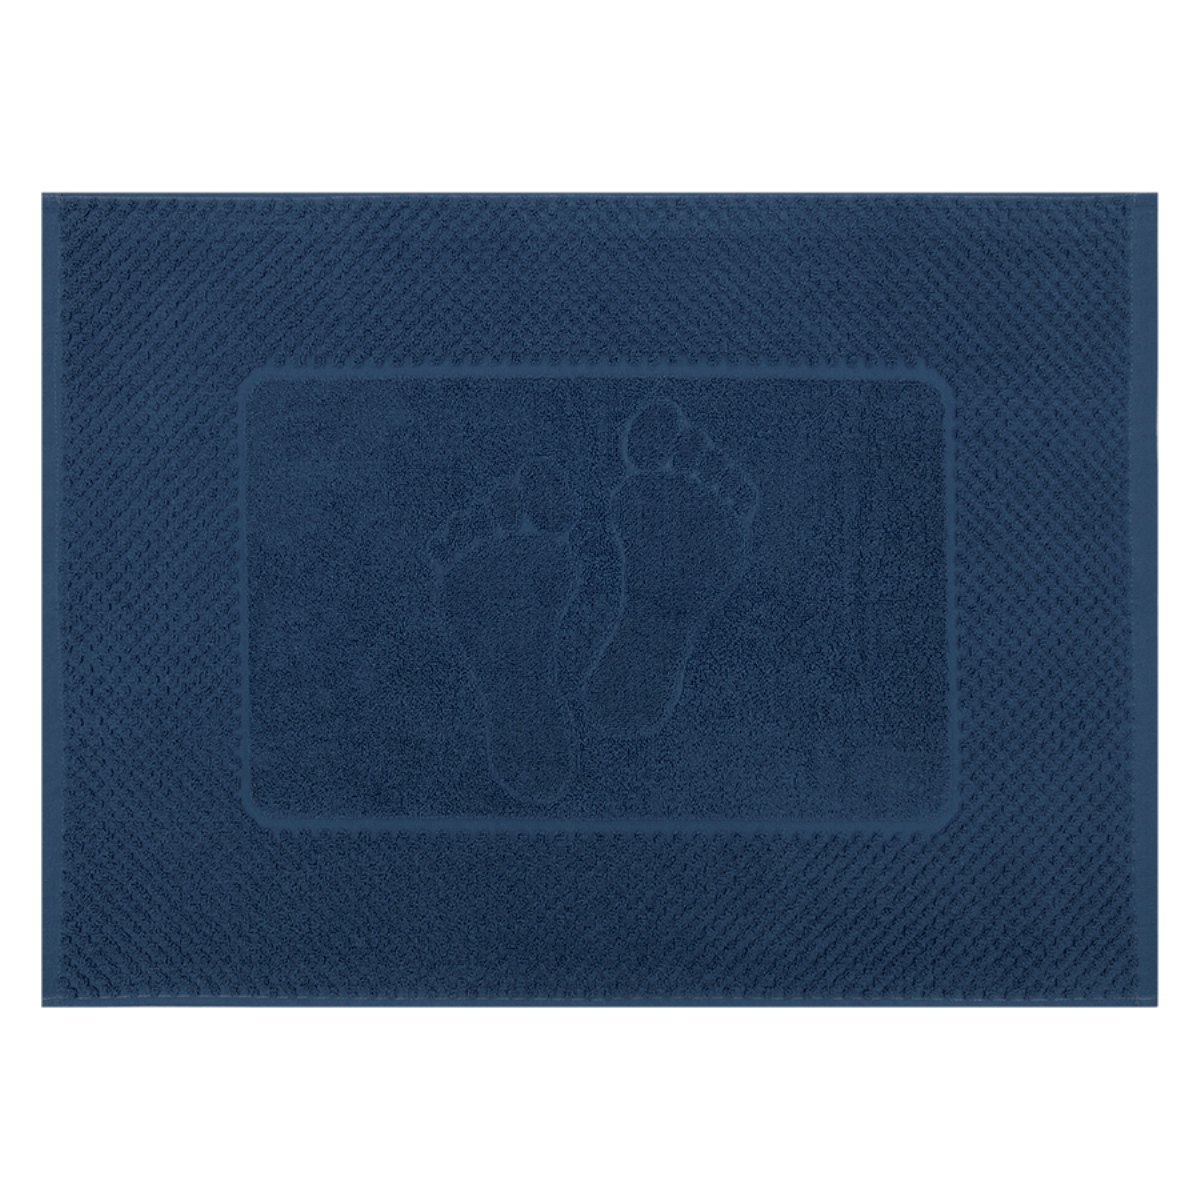 Махровое полотенце-коврик Bravo м7725_01 50х70 синий - фото 1